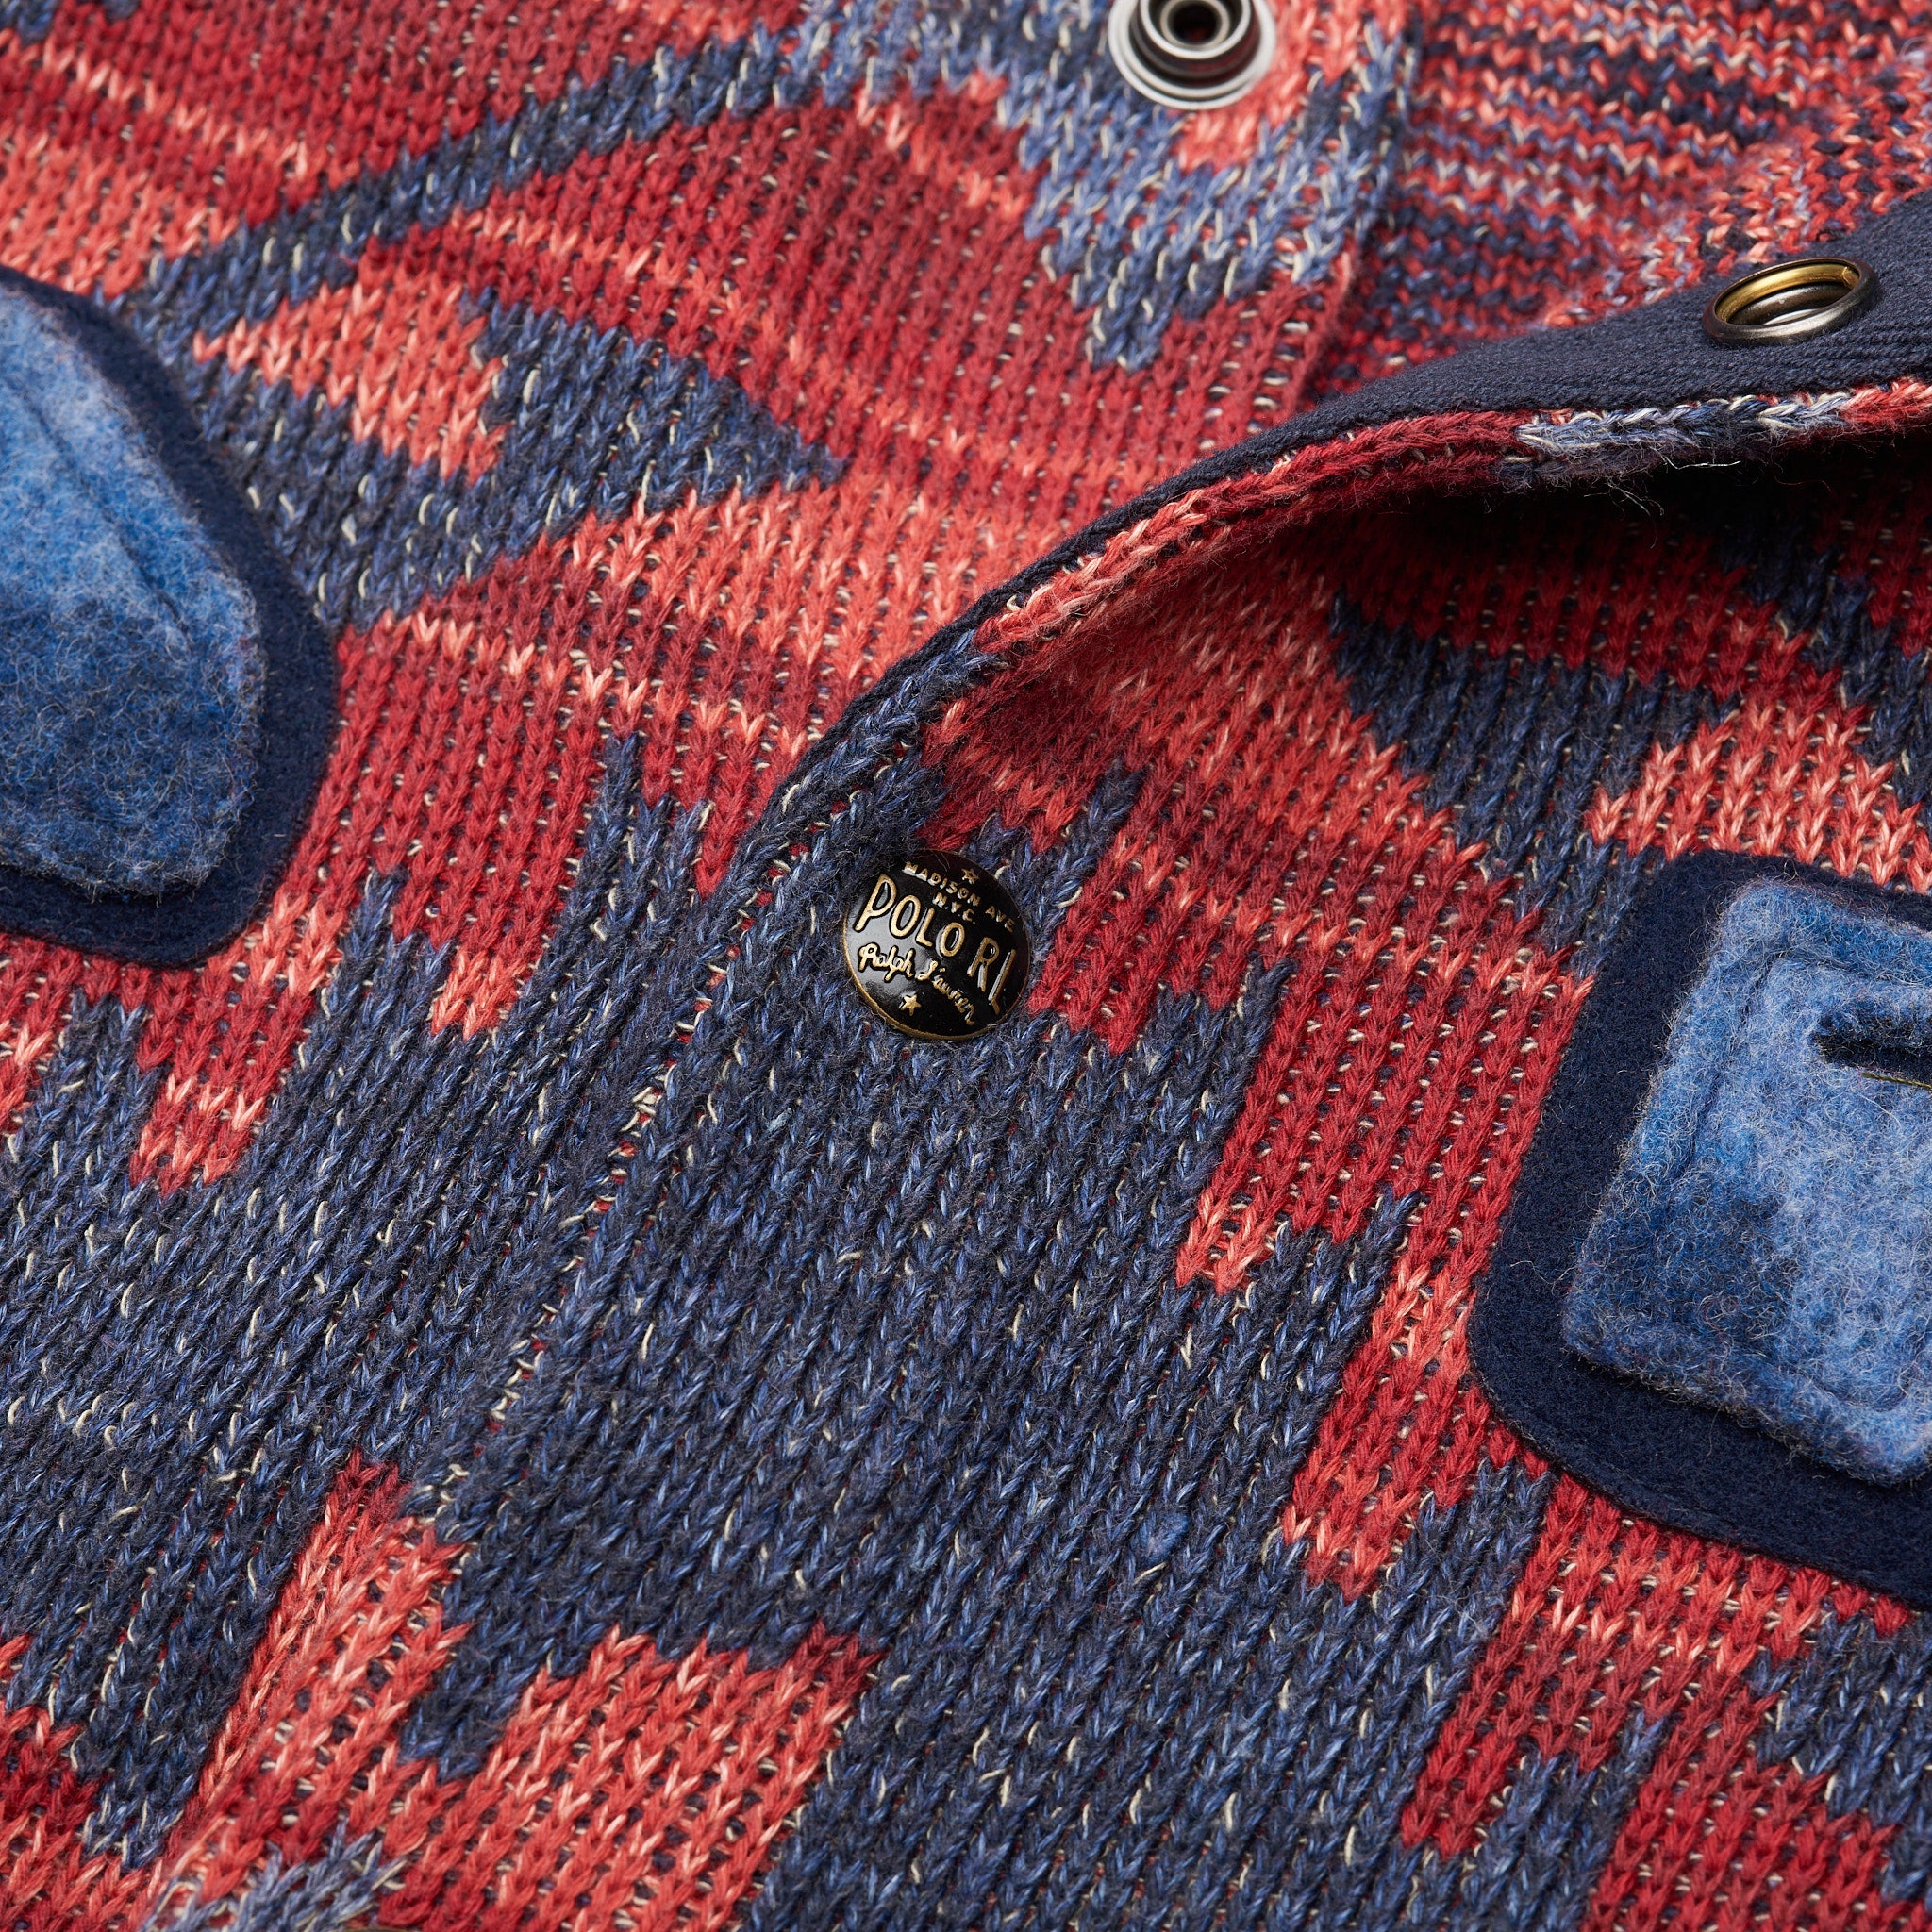 POLO RALPH LAUREN ‘67’ Sioux Star Knit Varsity Jacket Baseball Sweater NEW US L RALPH LAUREN